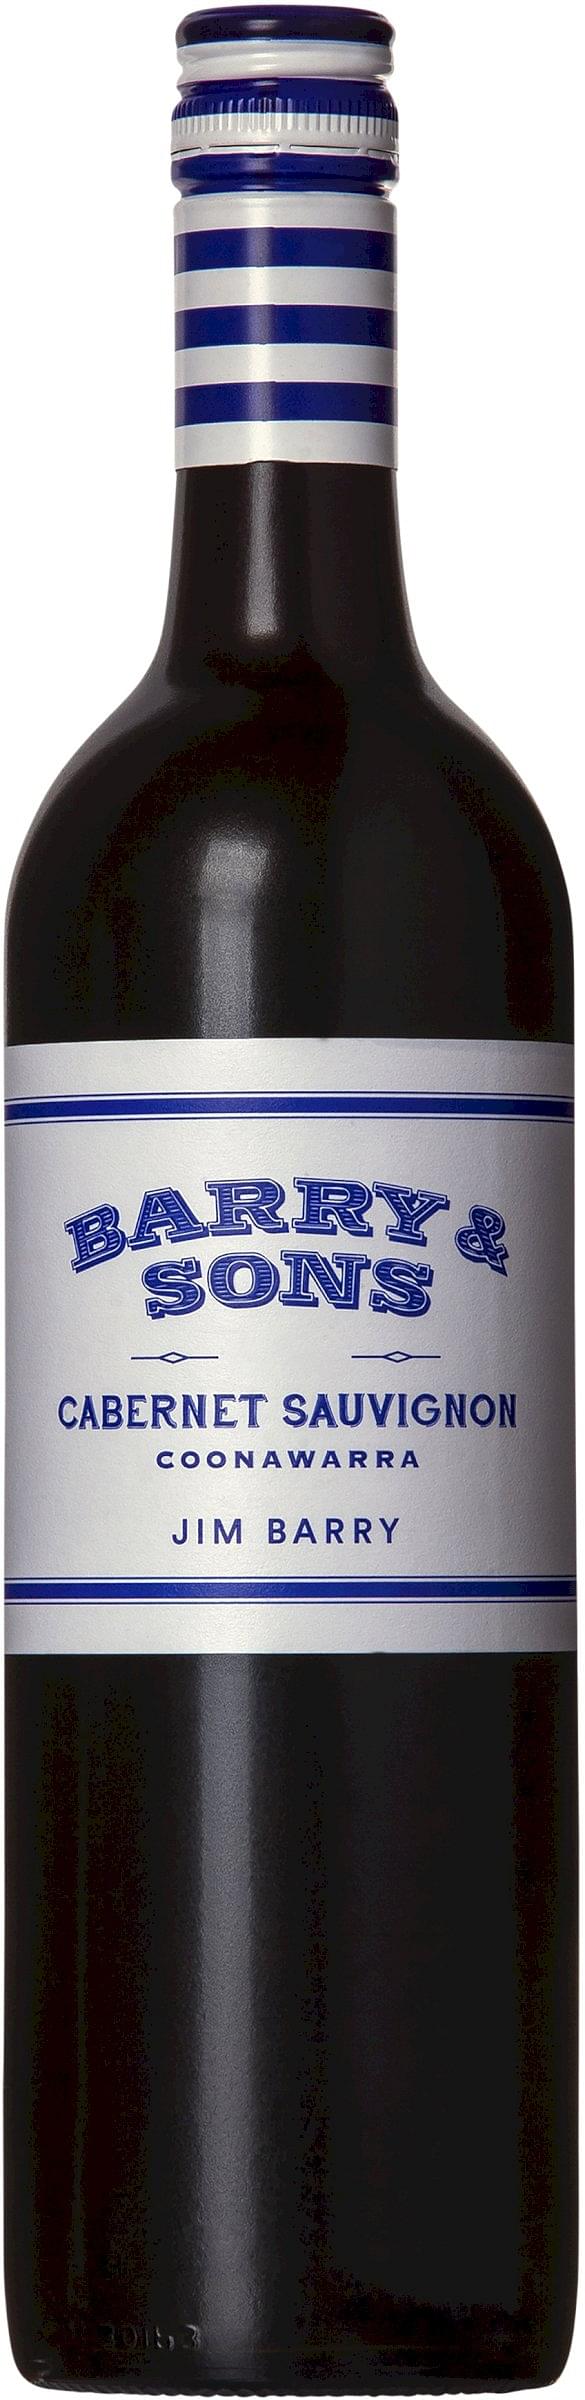 Jim Barry 'Barry & Sons' Cabernet Sauvignon